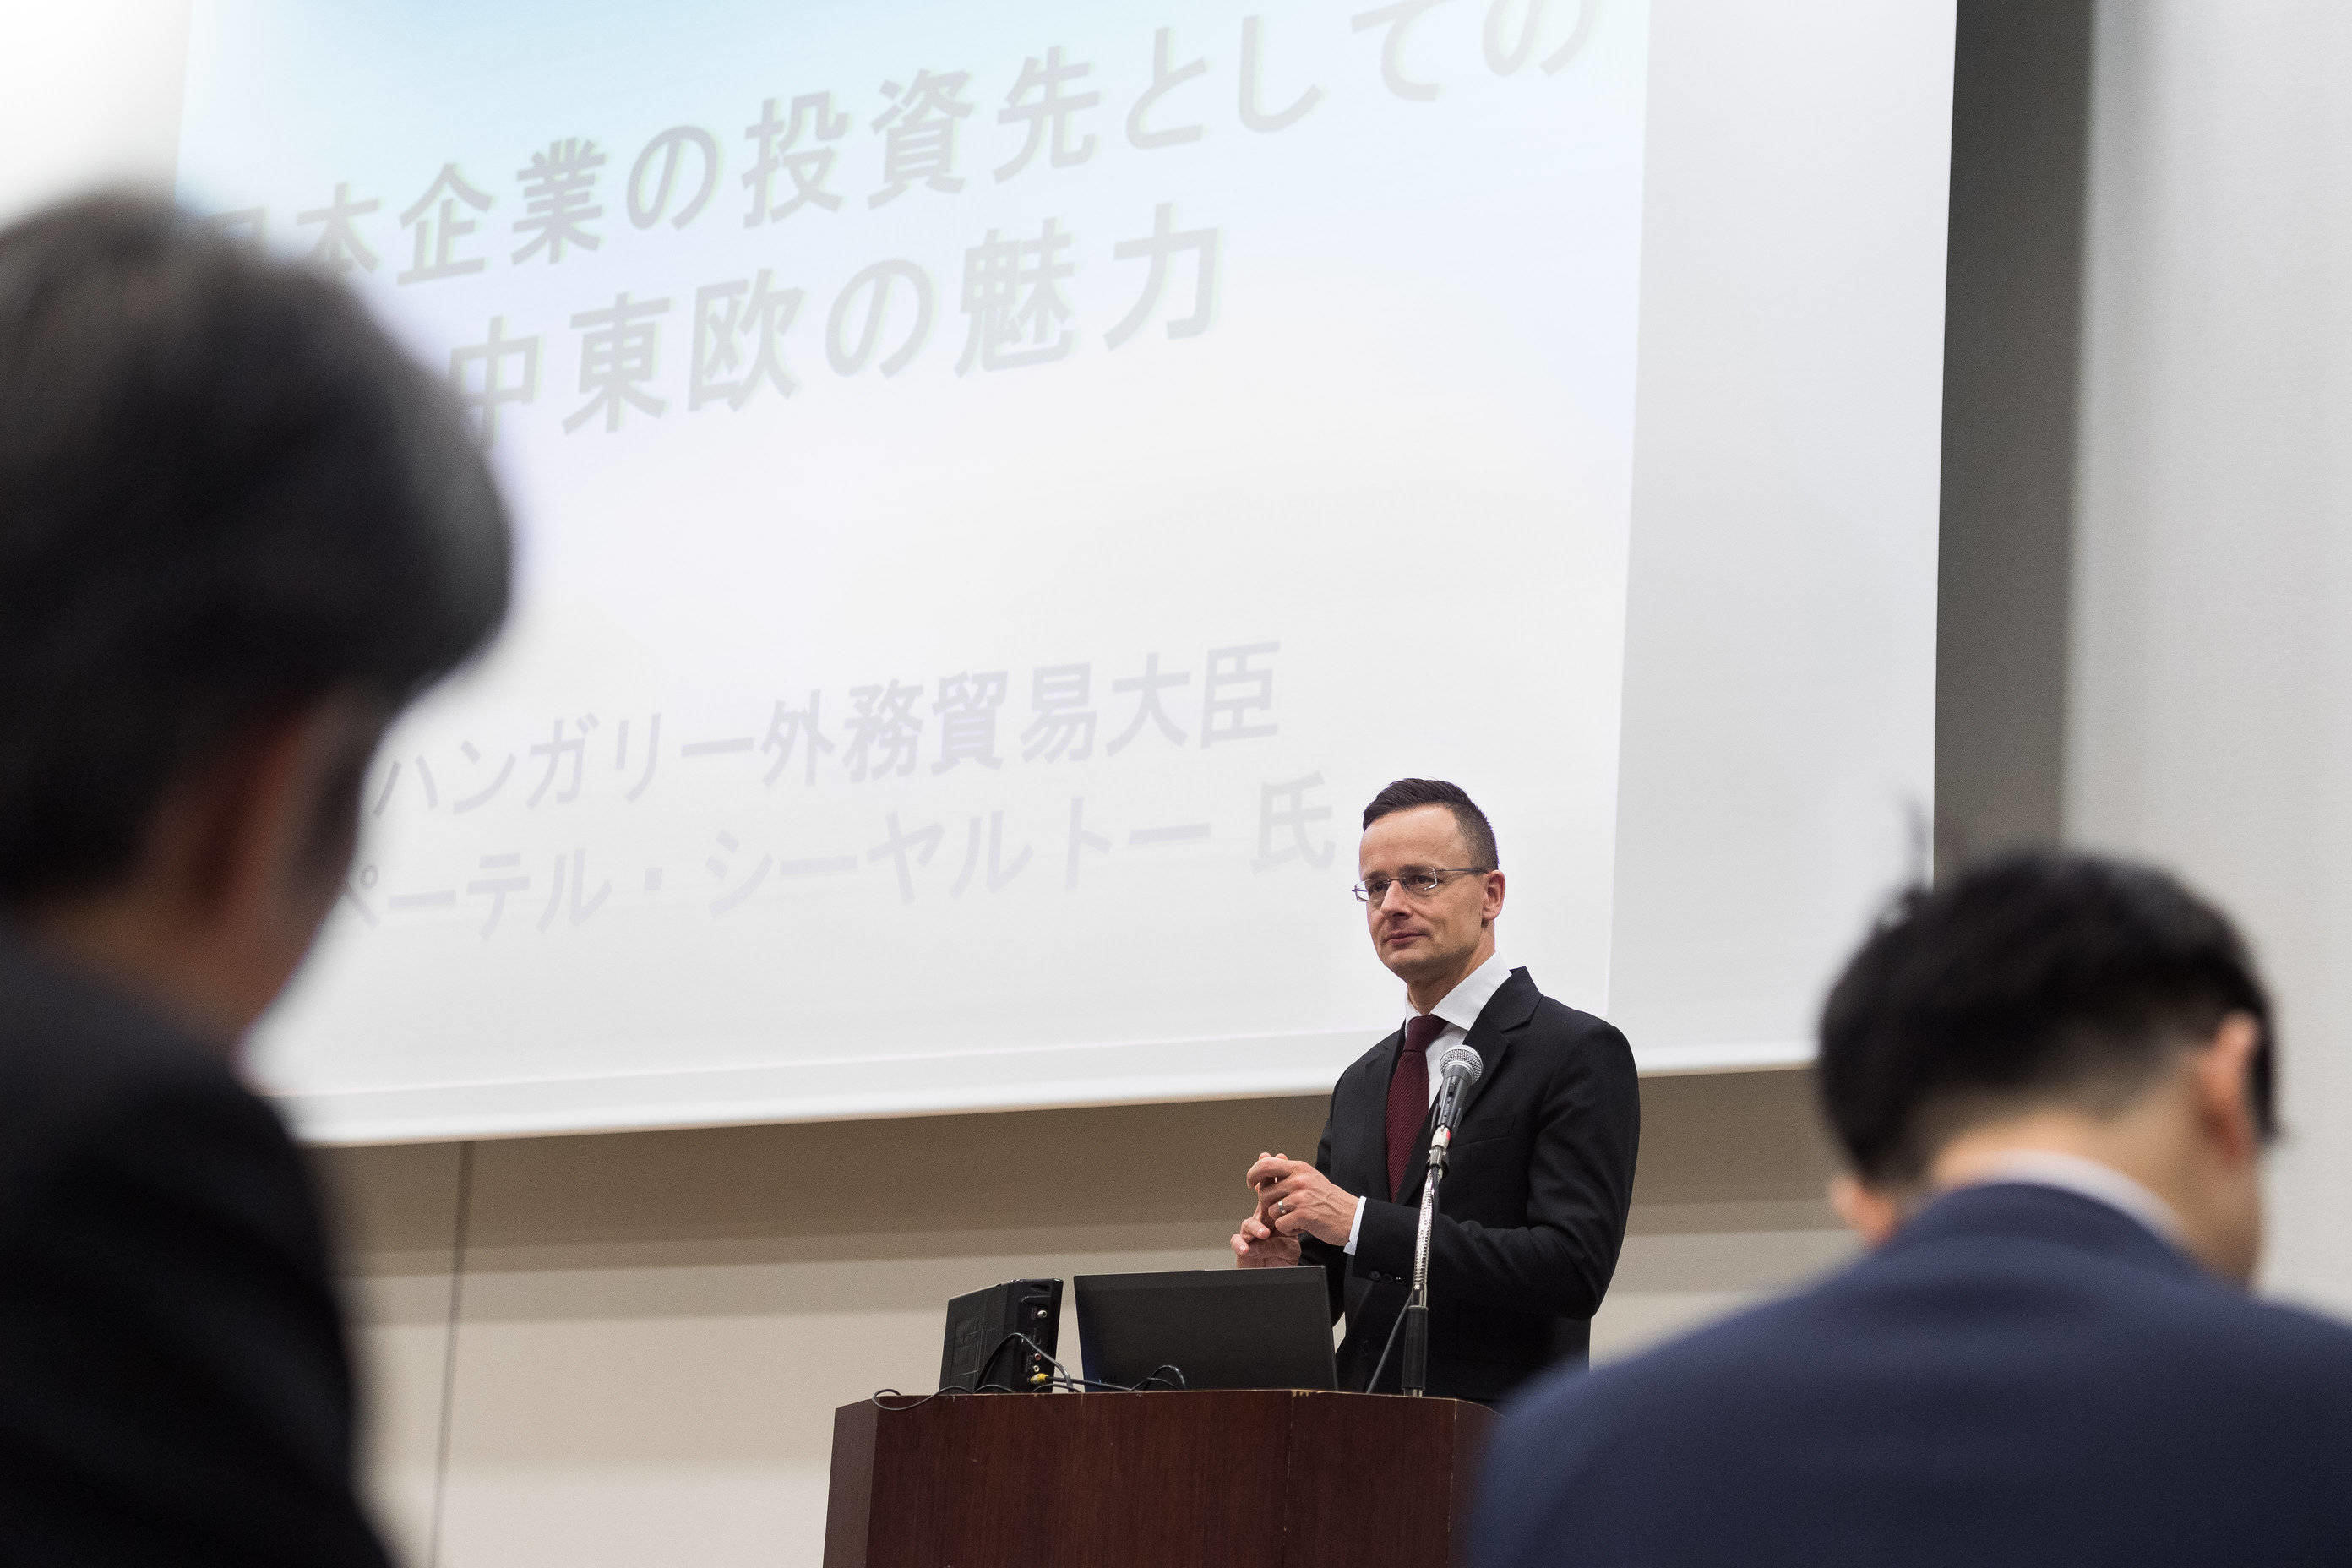 relațiile cu Ungaria și Japonia